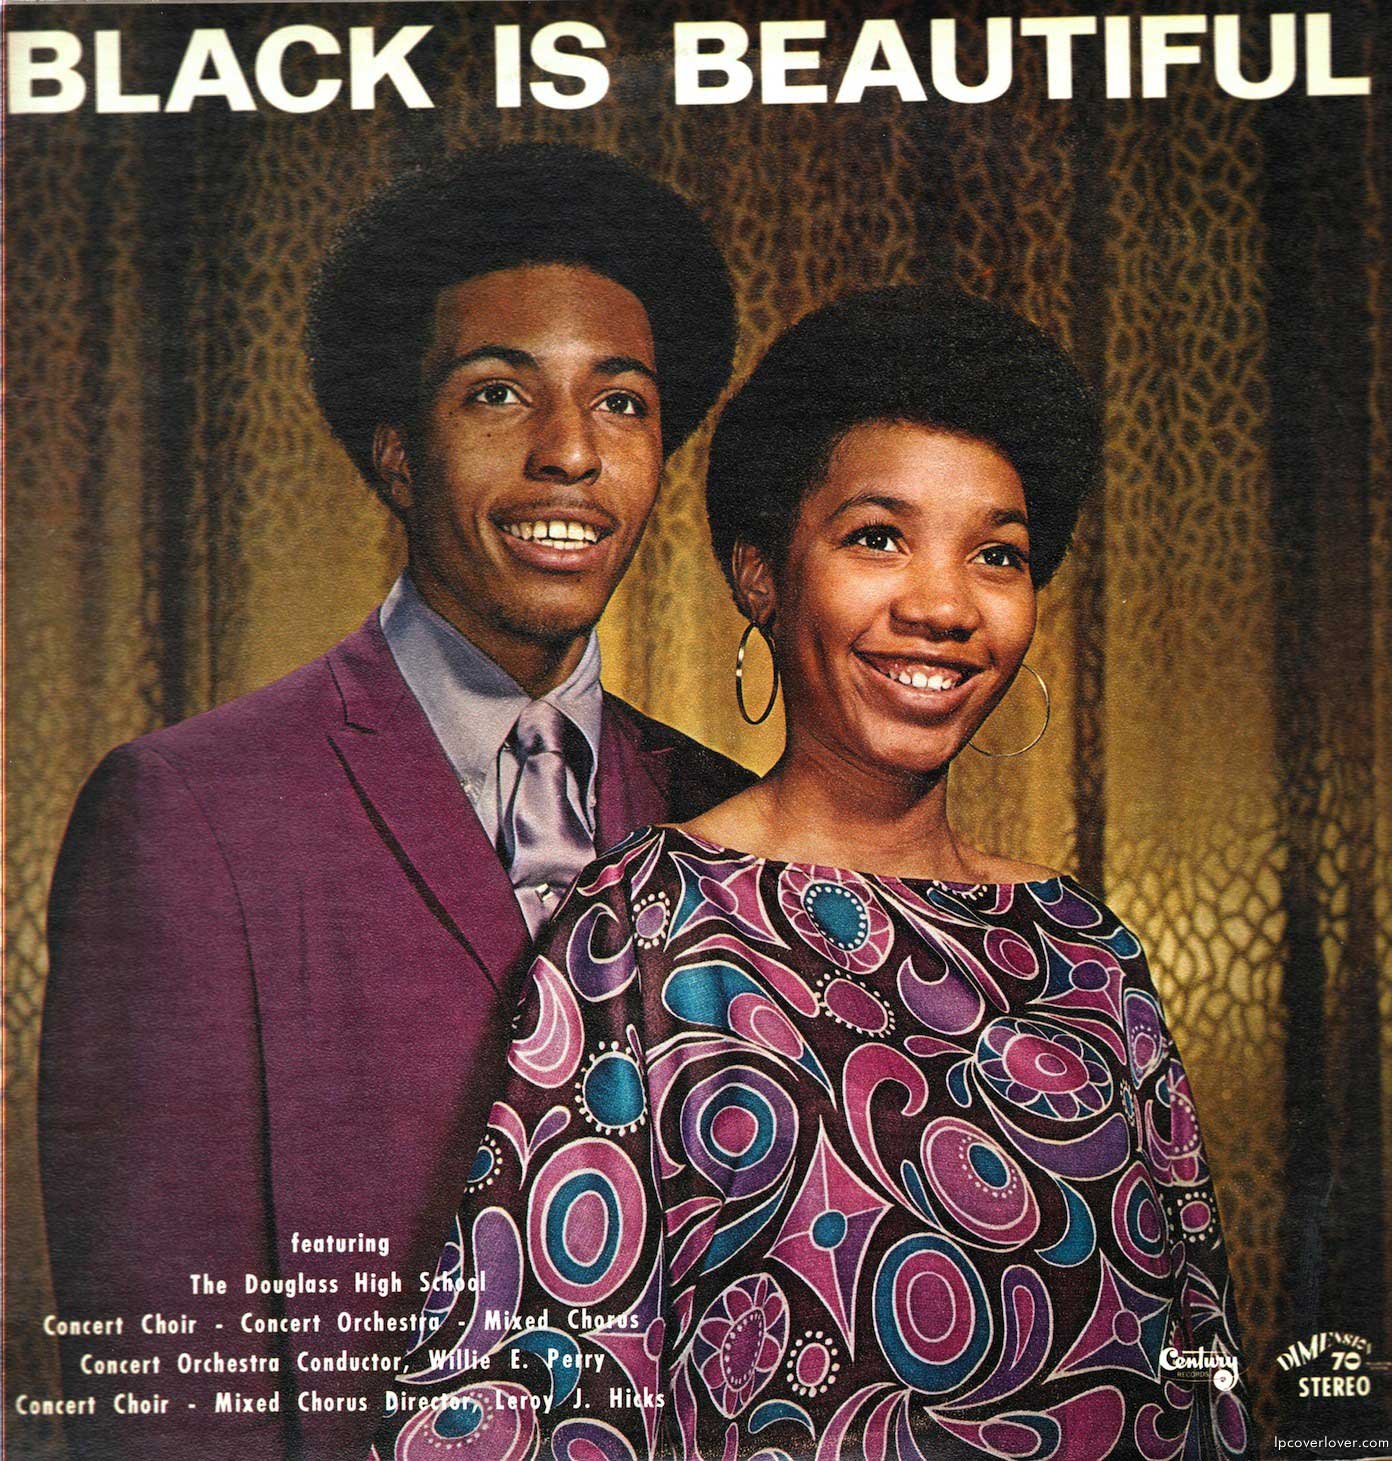 Couverture du disque -Black is Beautiful- (1970) du groupe The Douglass High School Choir